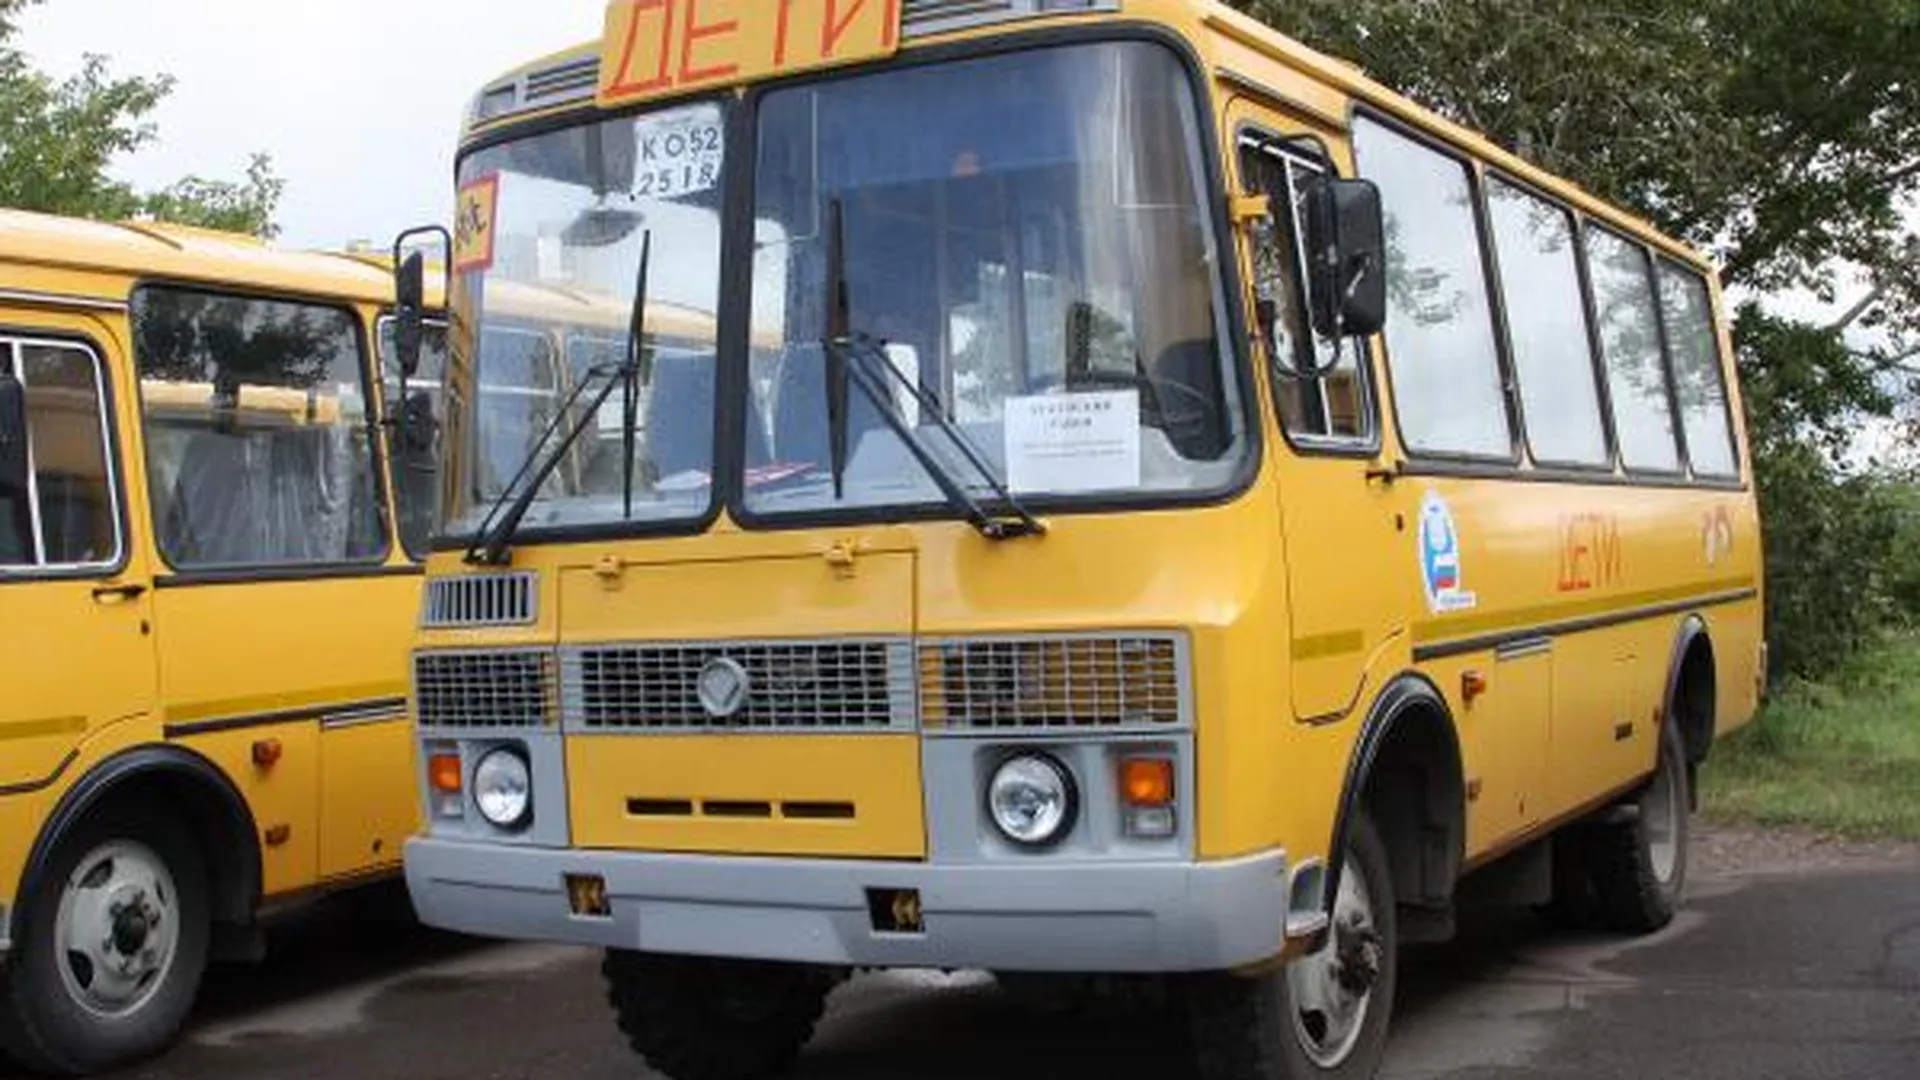 Дополнительную проверку школьных автобусов проведут в МО